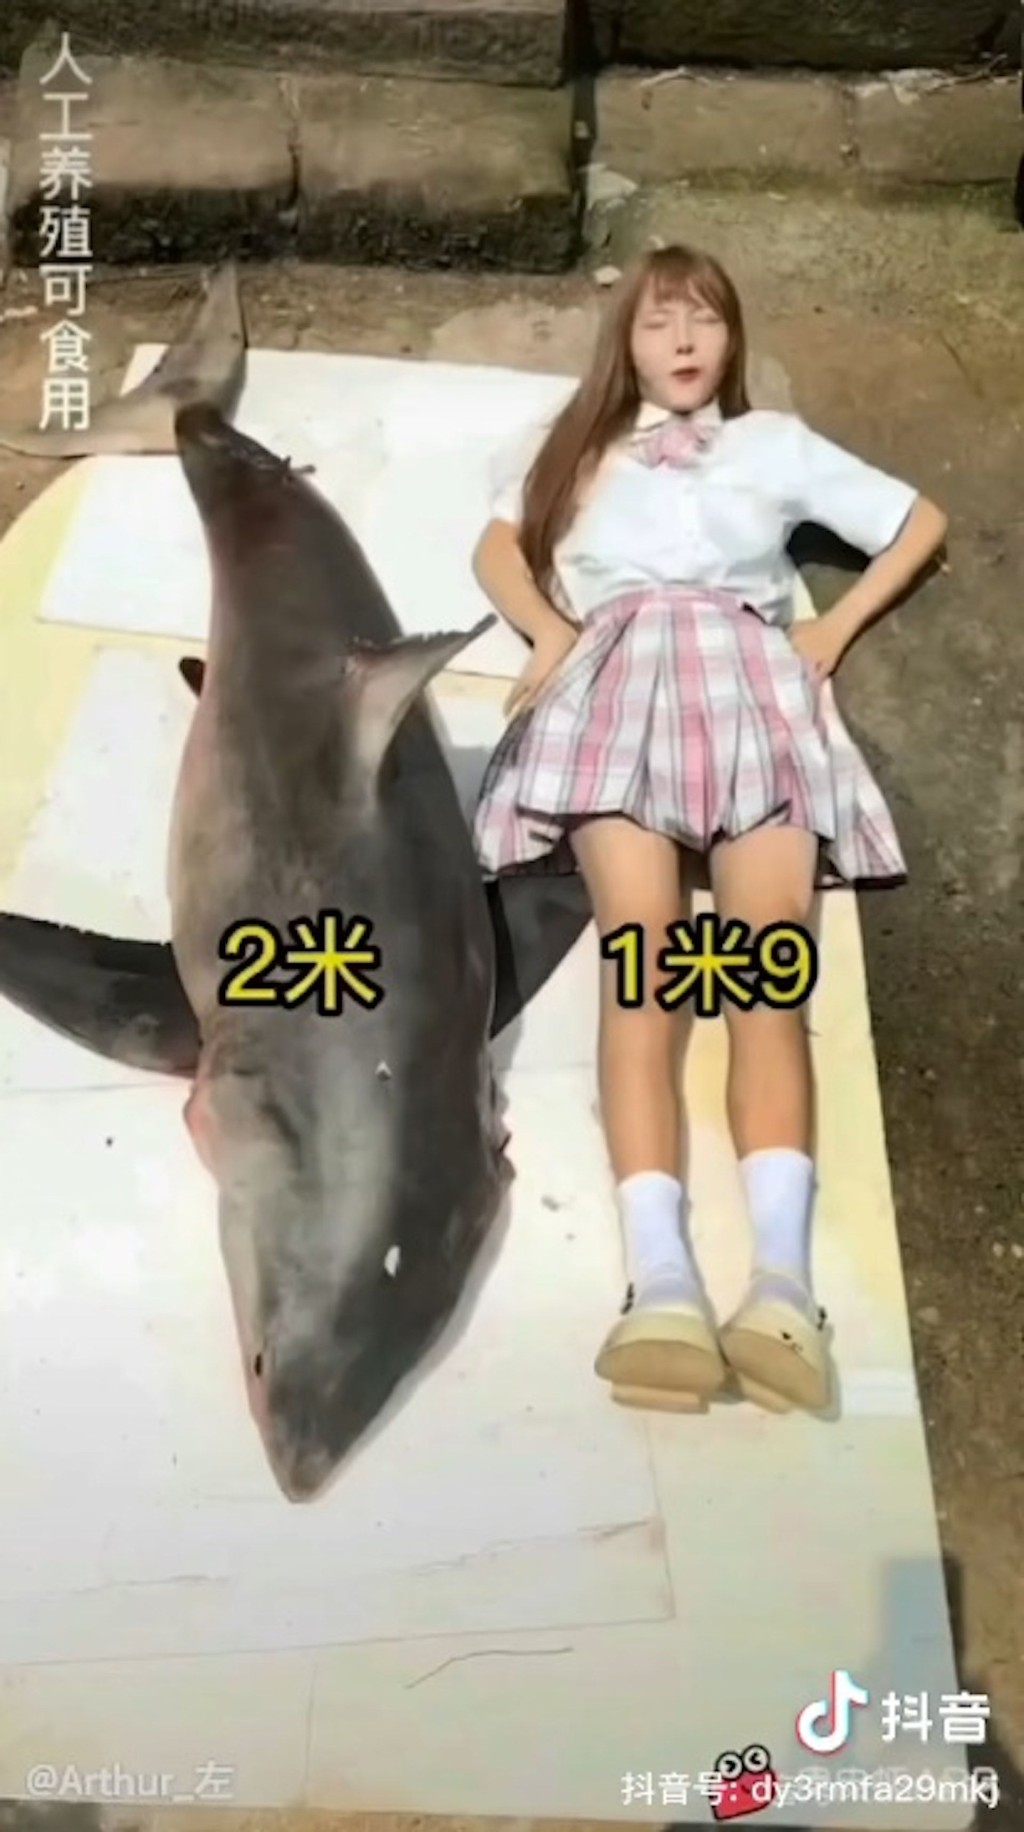 鲨鱼身长约2米。